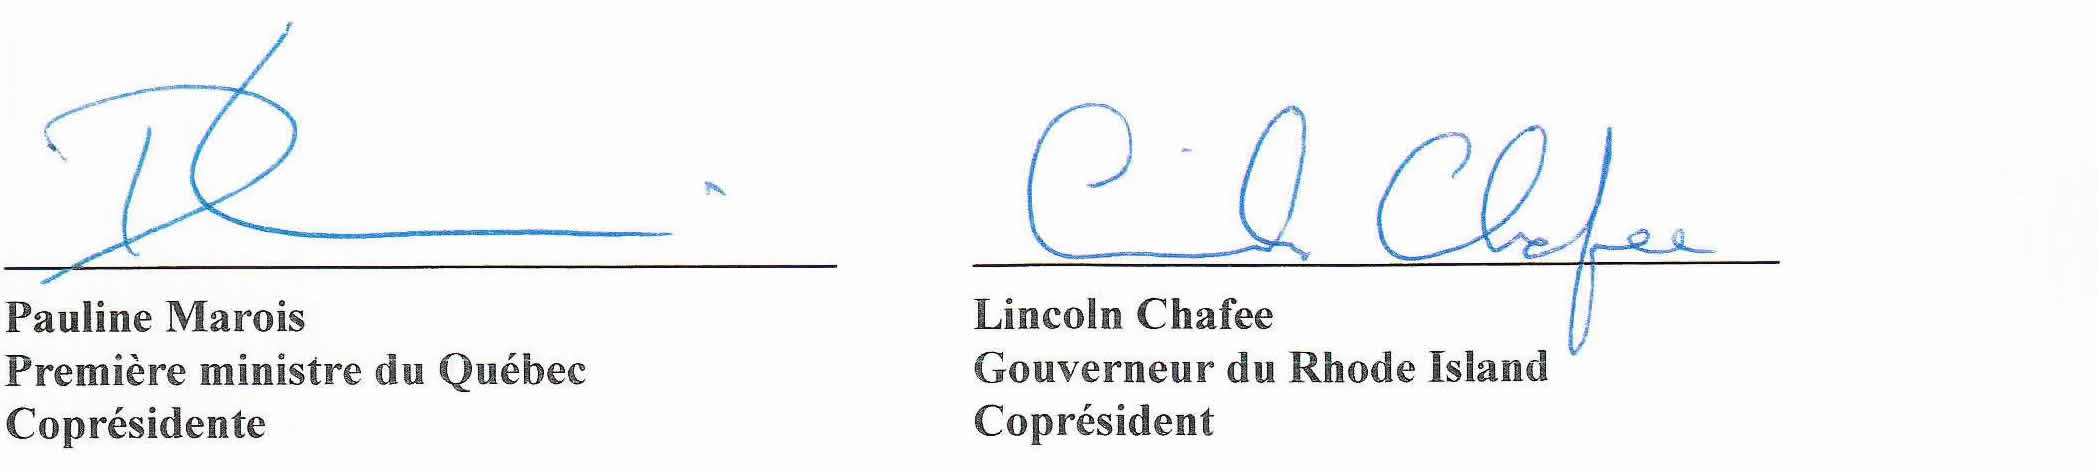 Signature de Pauline Marois, Première minister du Québec, Coprésidente et de Lincoln Chafee, Gouverneur du Rhode Island, Coprésident